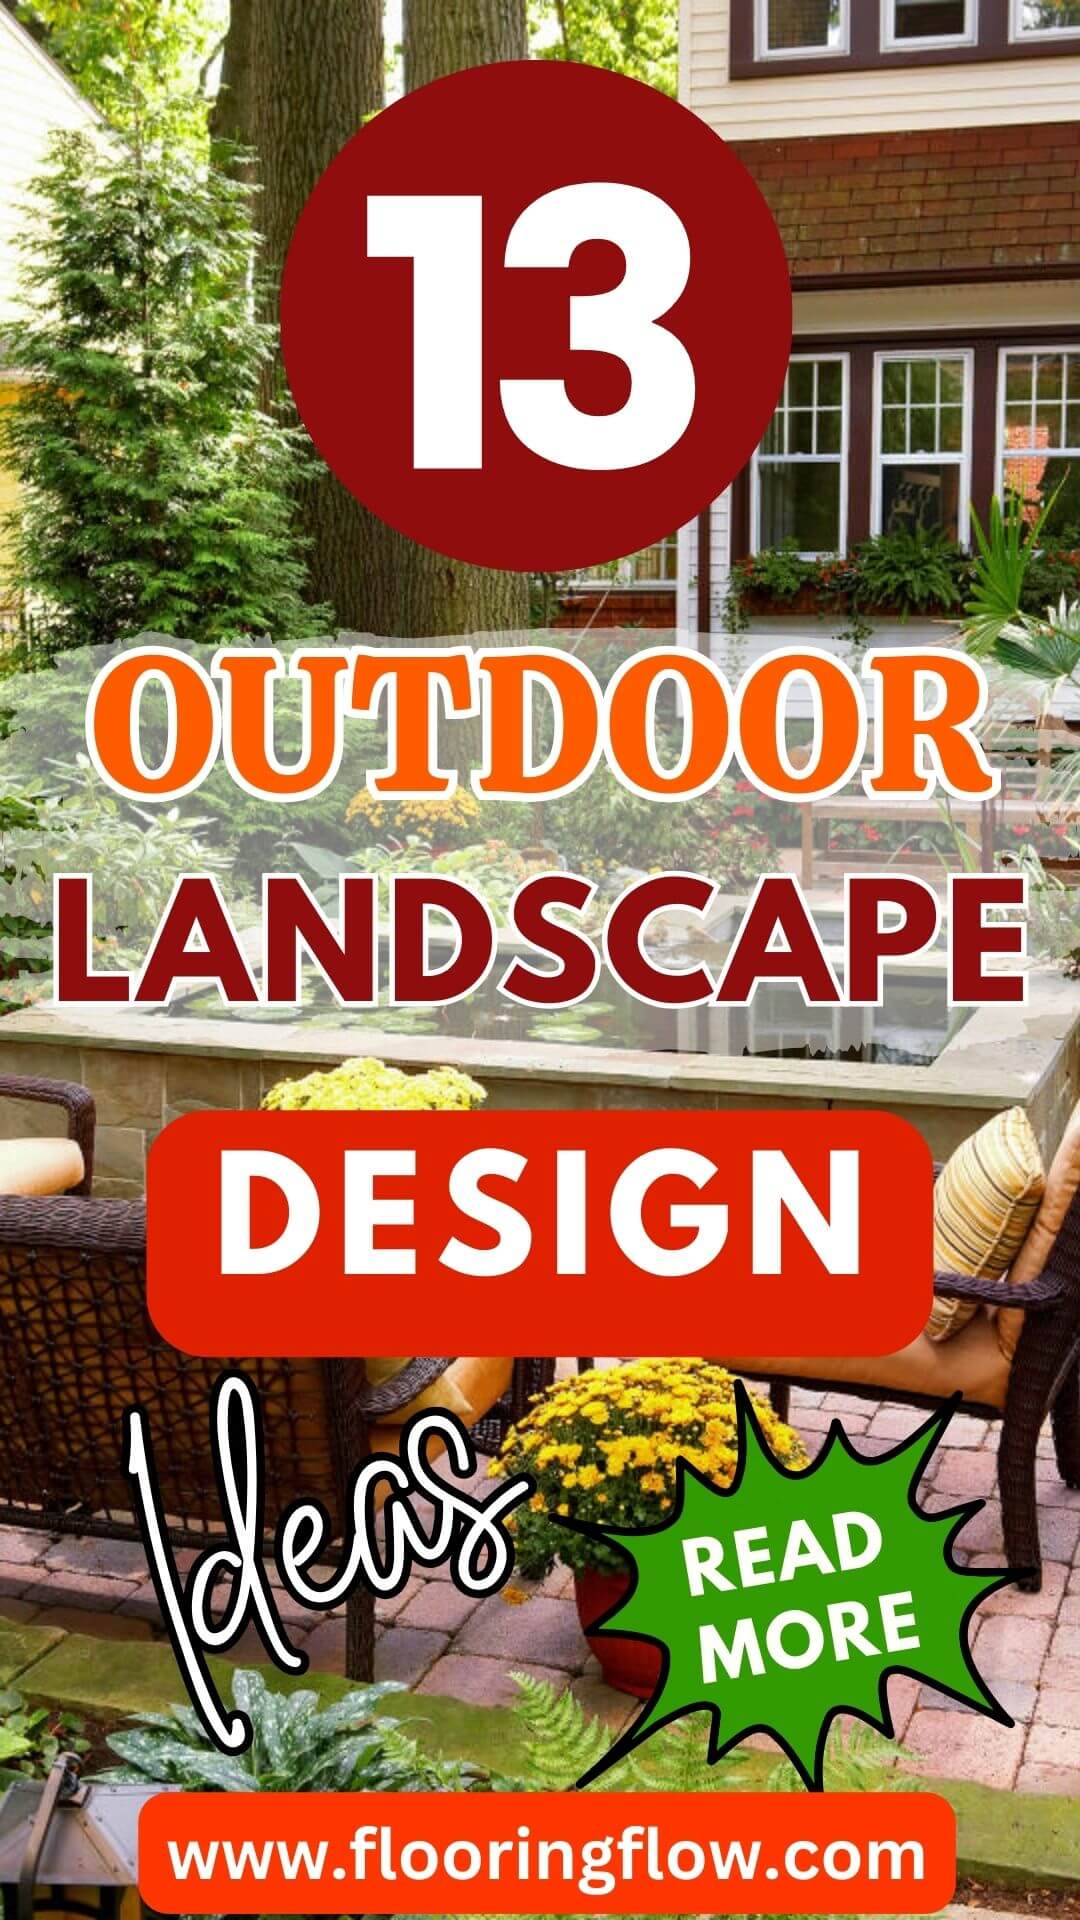 Outdoor Landscape Design Ideas